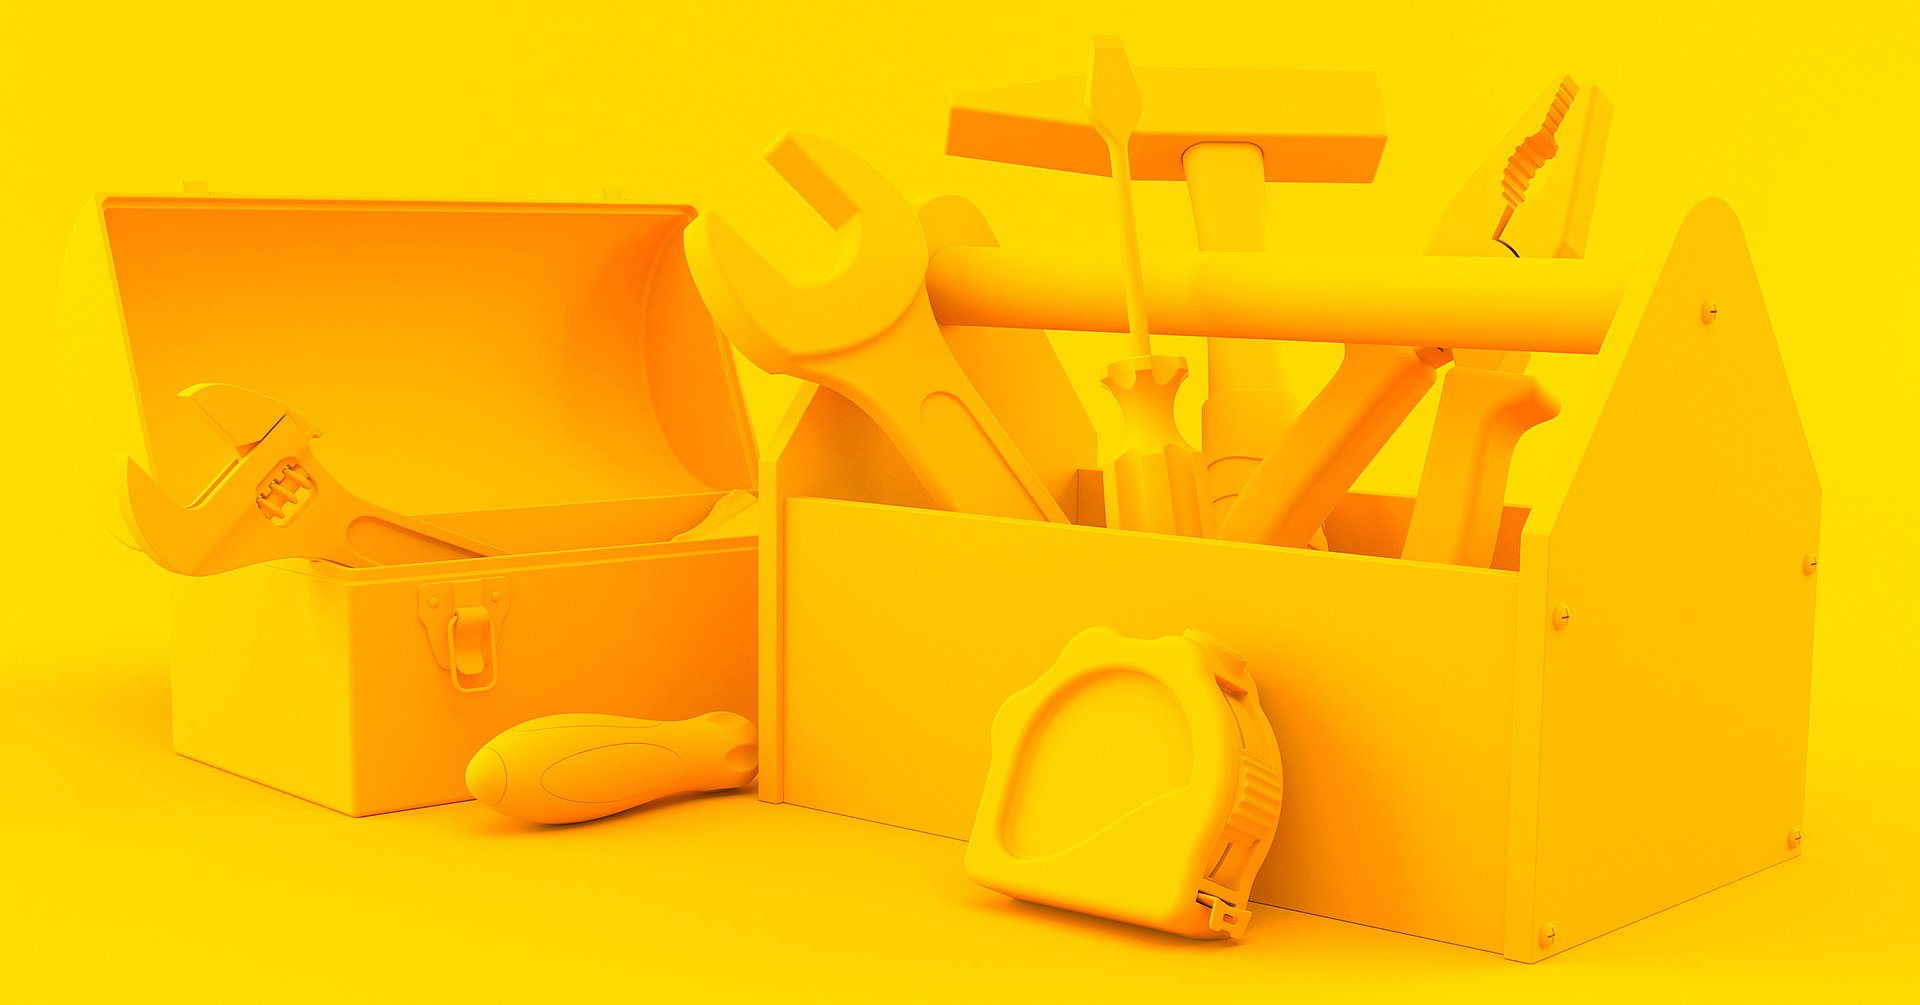 Werkzeugkiste in gelb eingefärbt